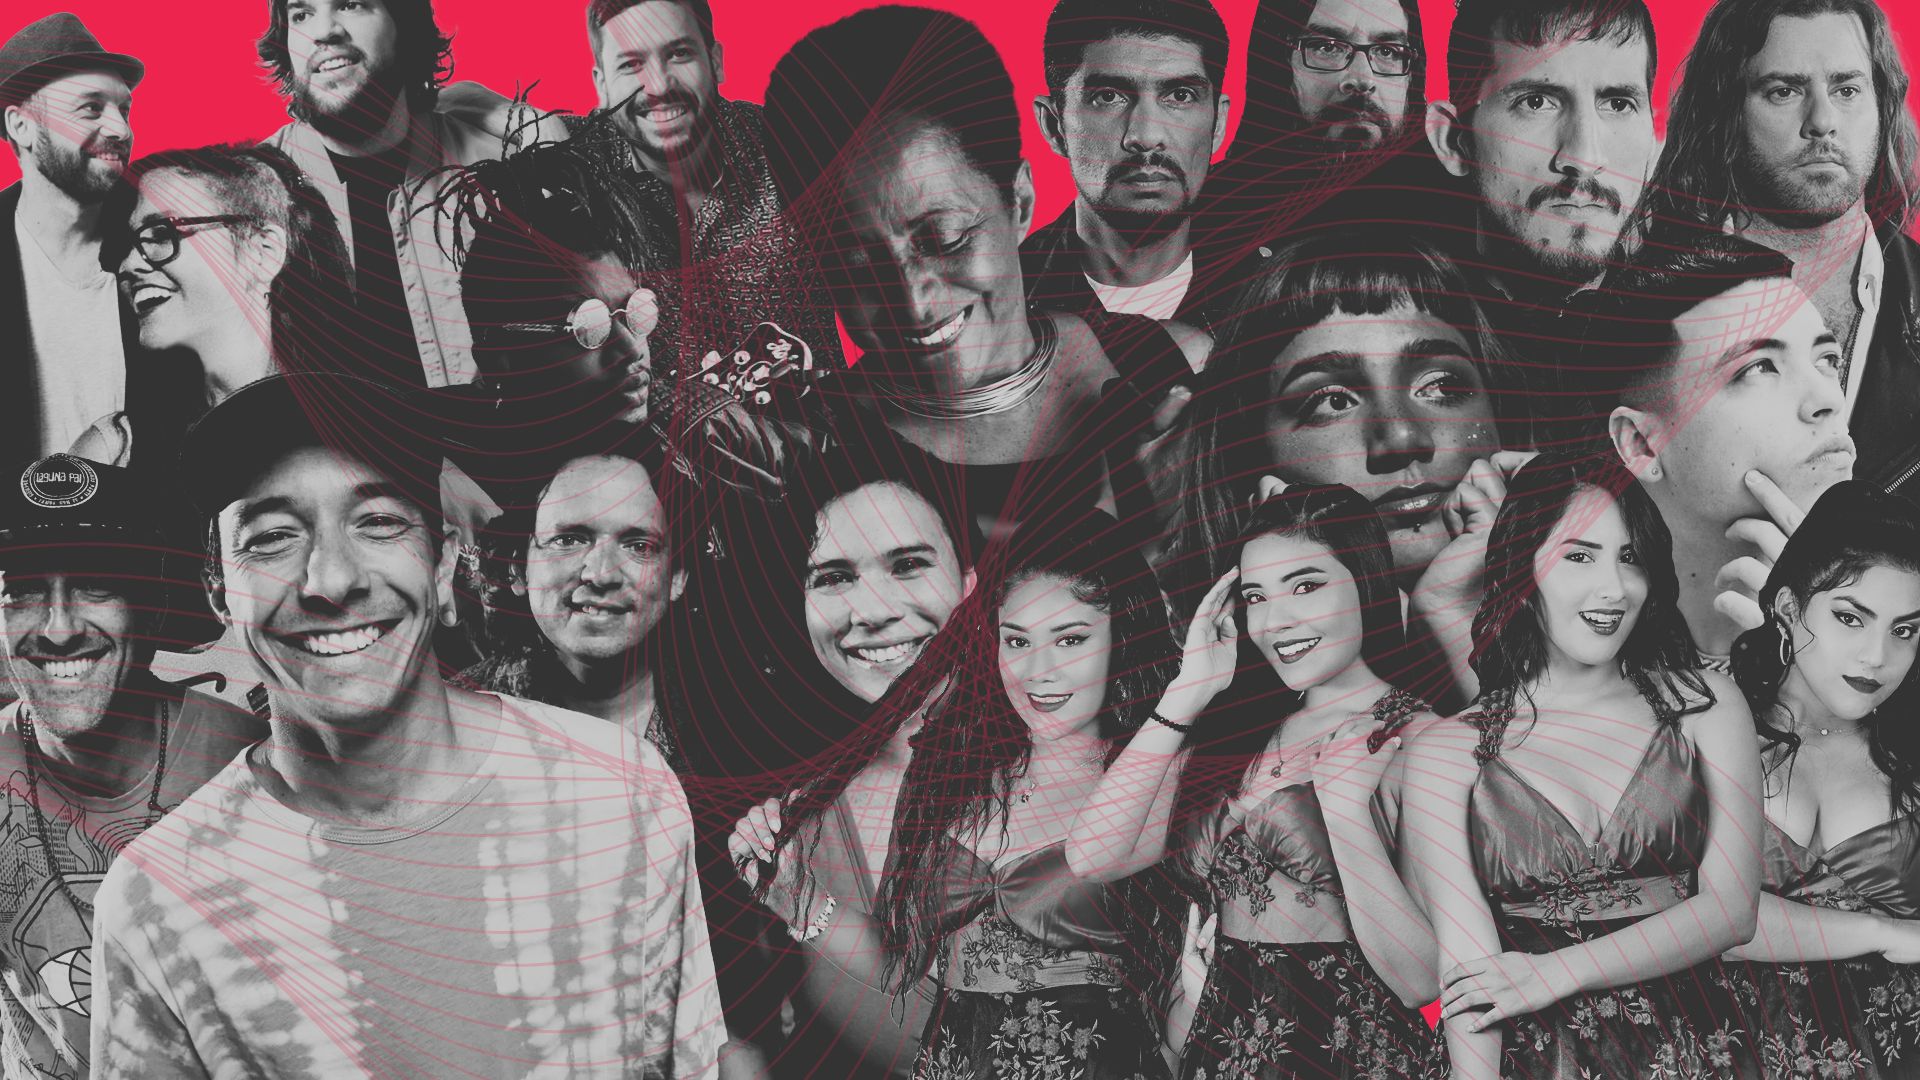 Susana Baca, We The Lion, Laguna Pai y otros artistas peruanos con nueva música en un collage con fondo rojo